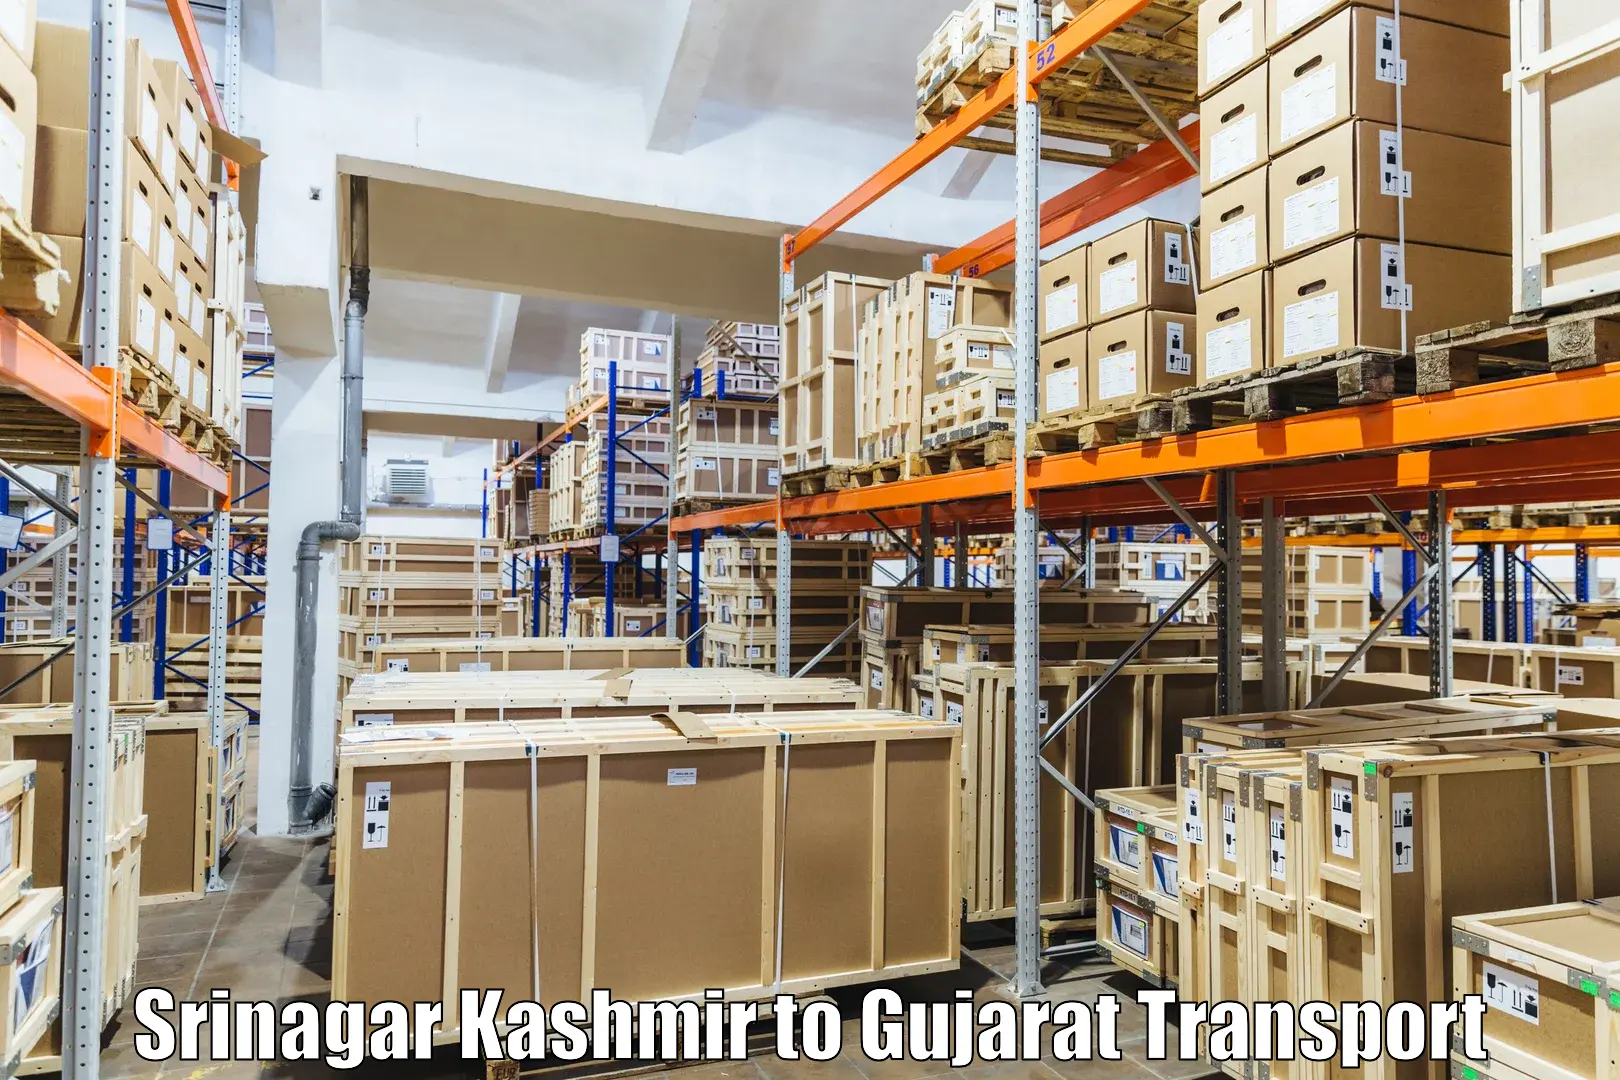 Interstate transport services Srinagar Kashmir to Udhana